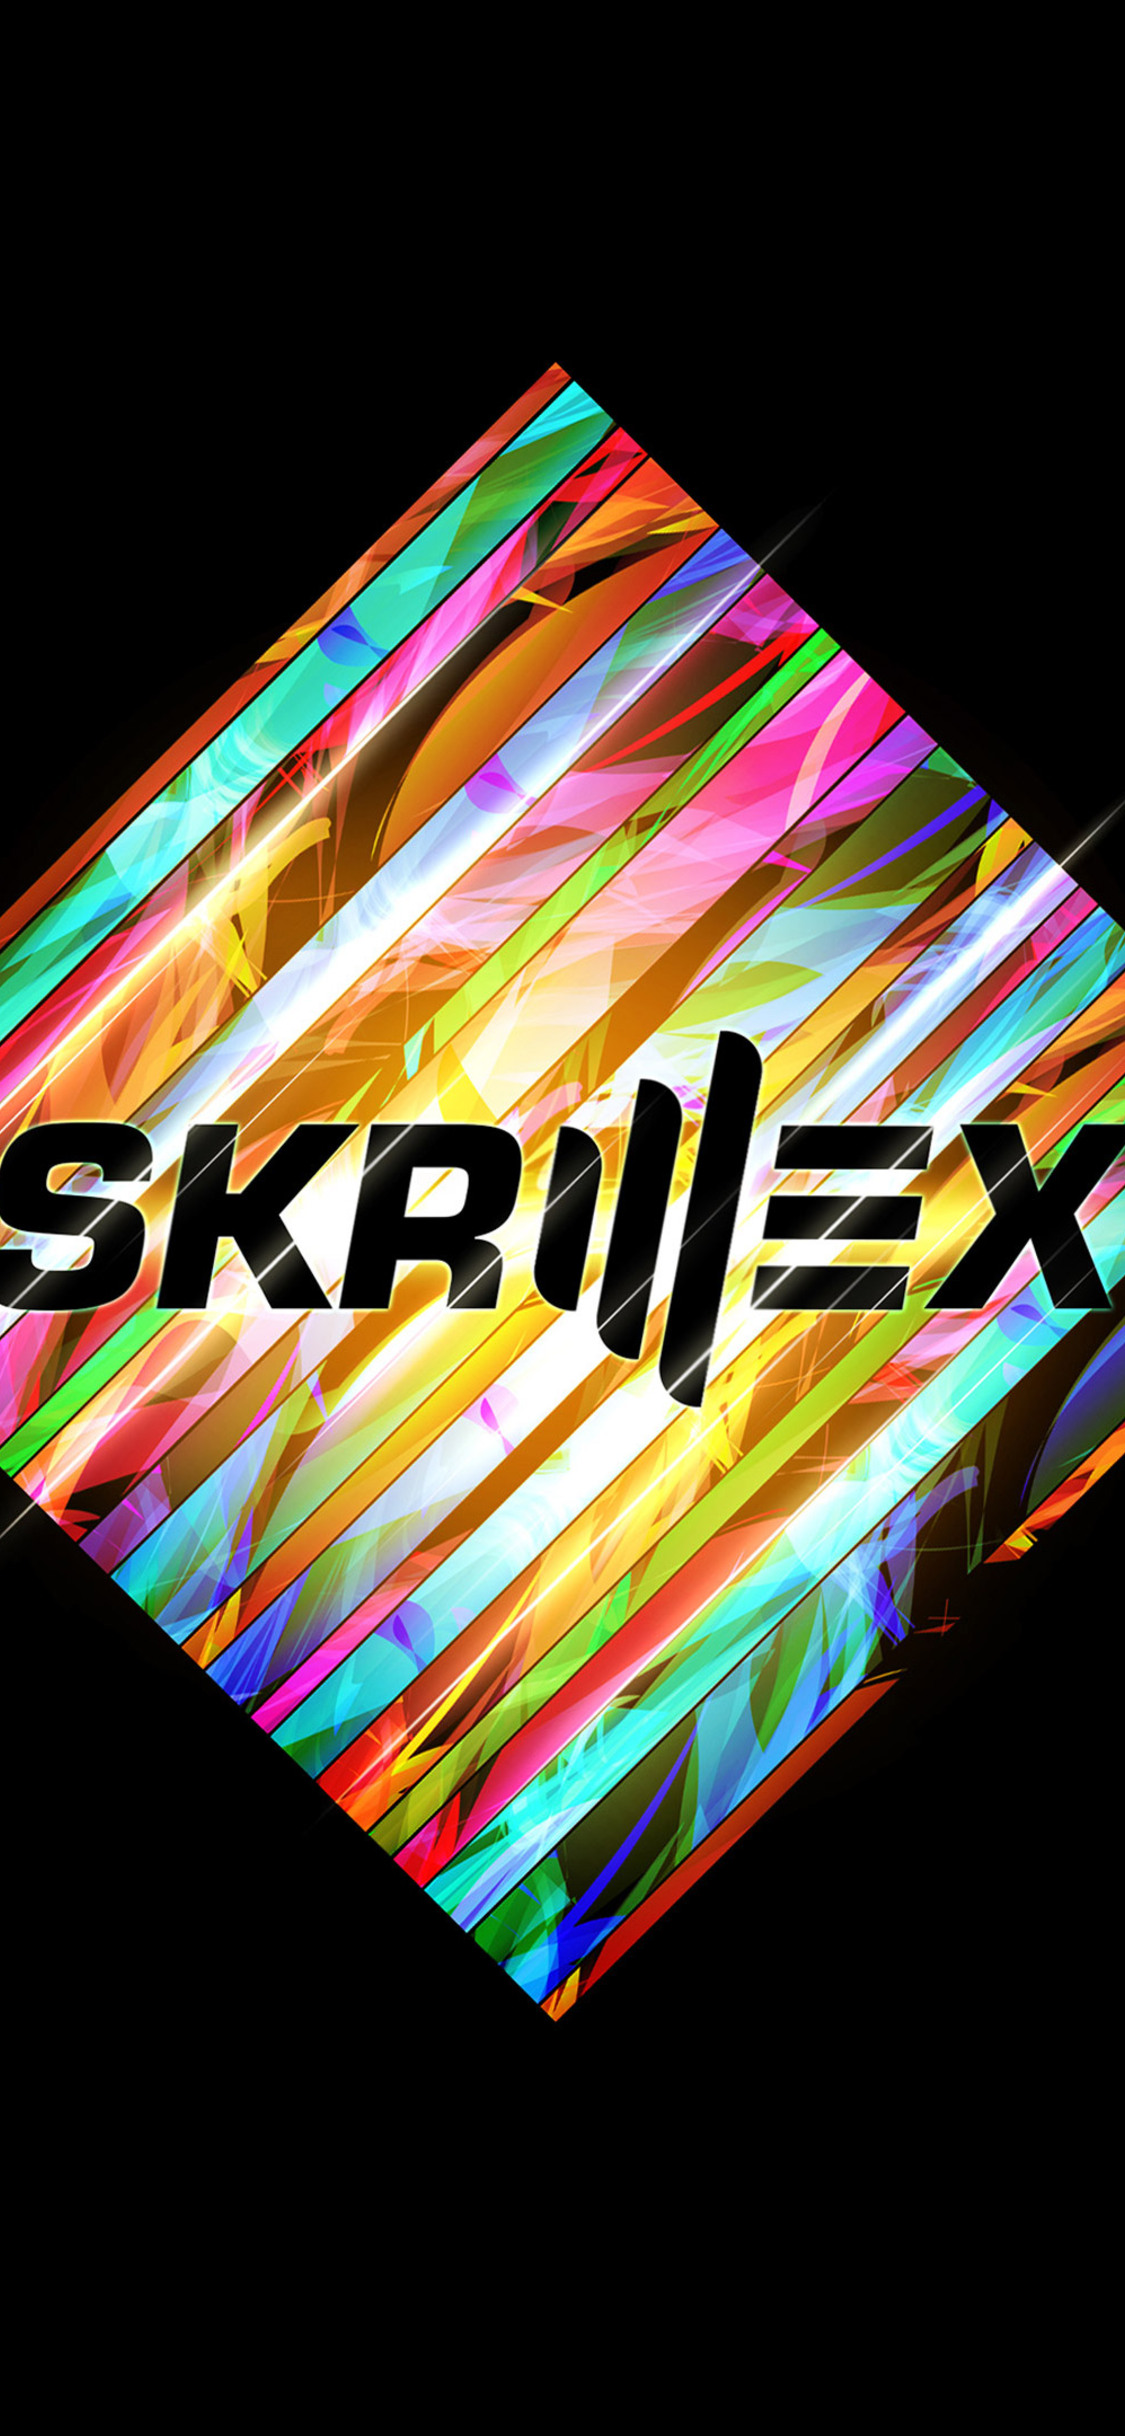 Skrillex Iphone Wallpapers